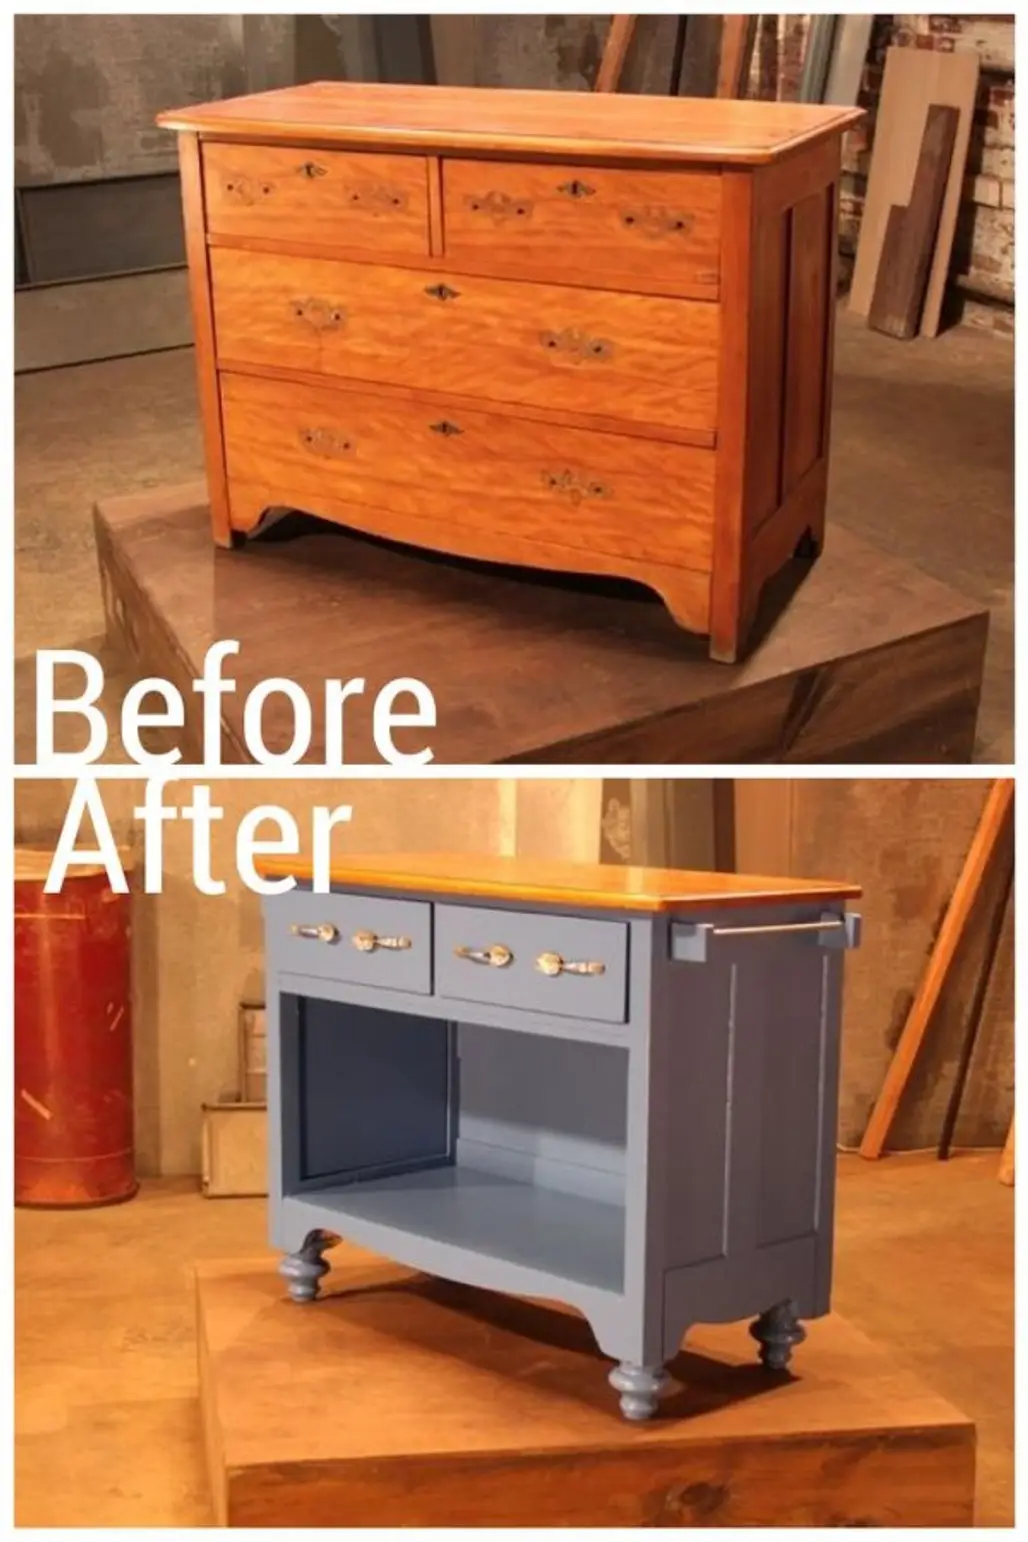 furniture,drawer,product,desk,hardwood,